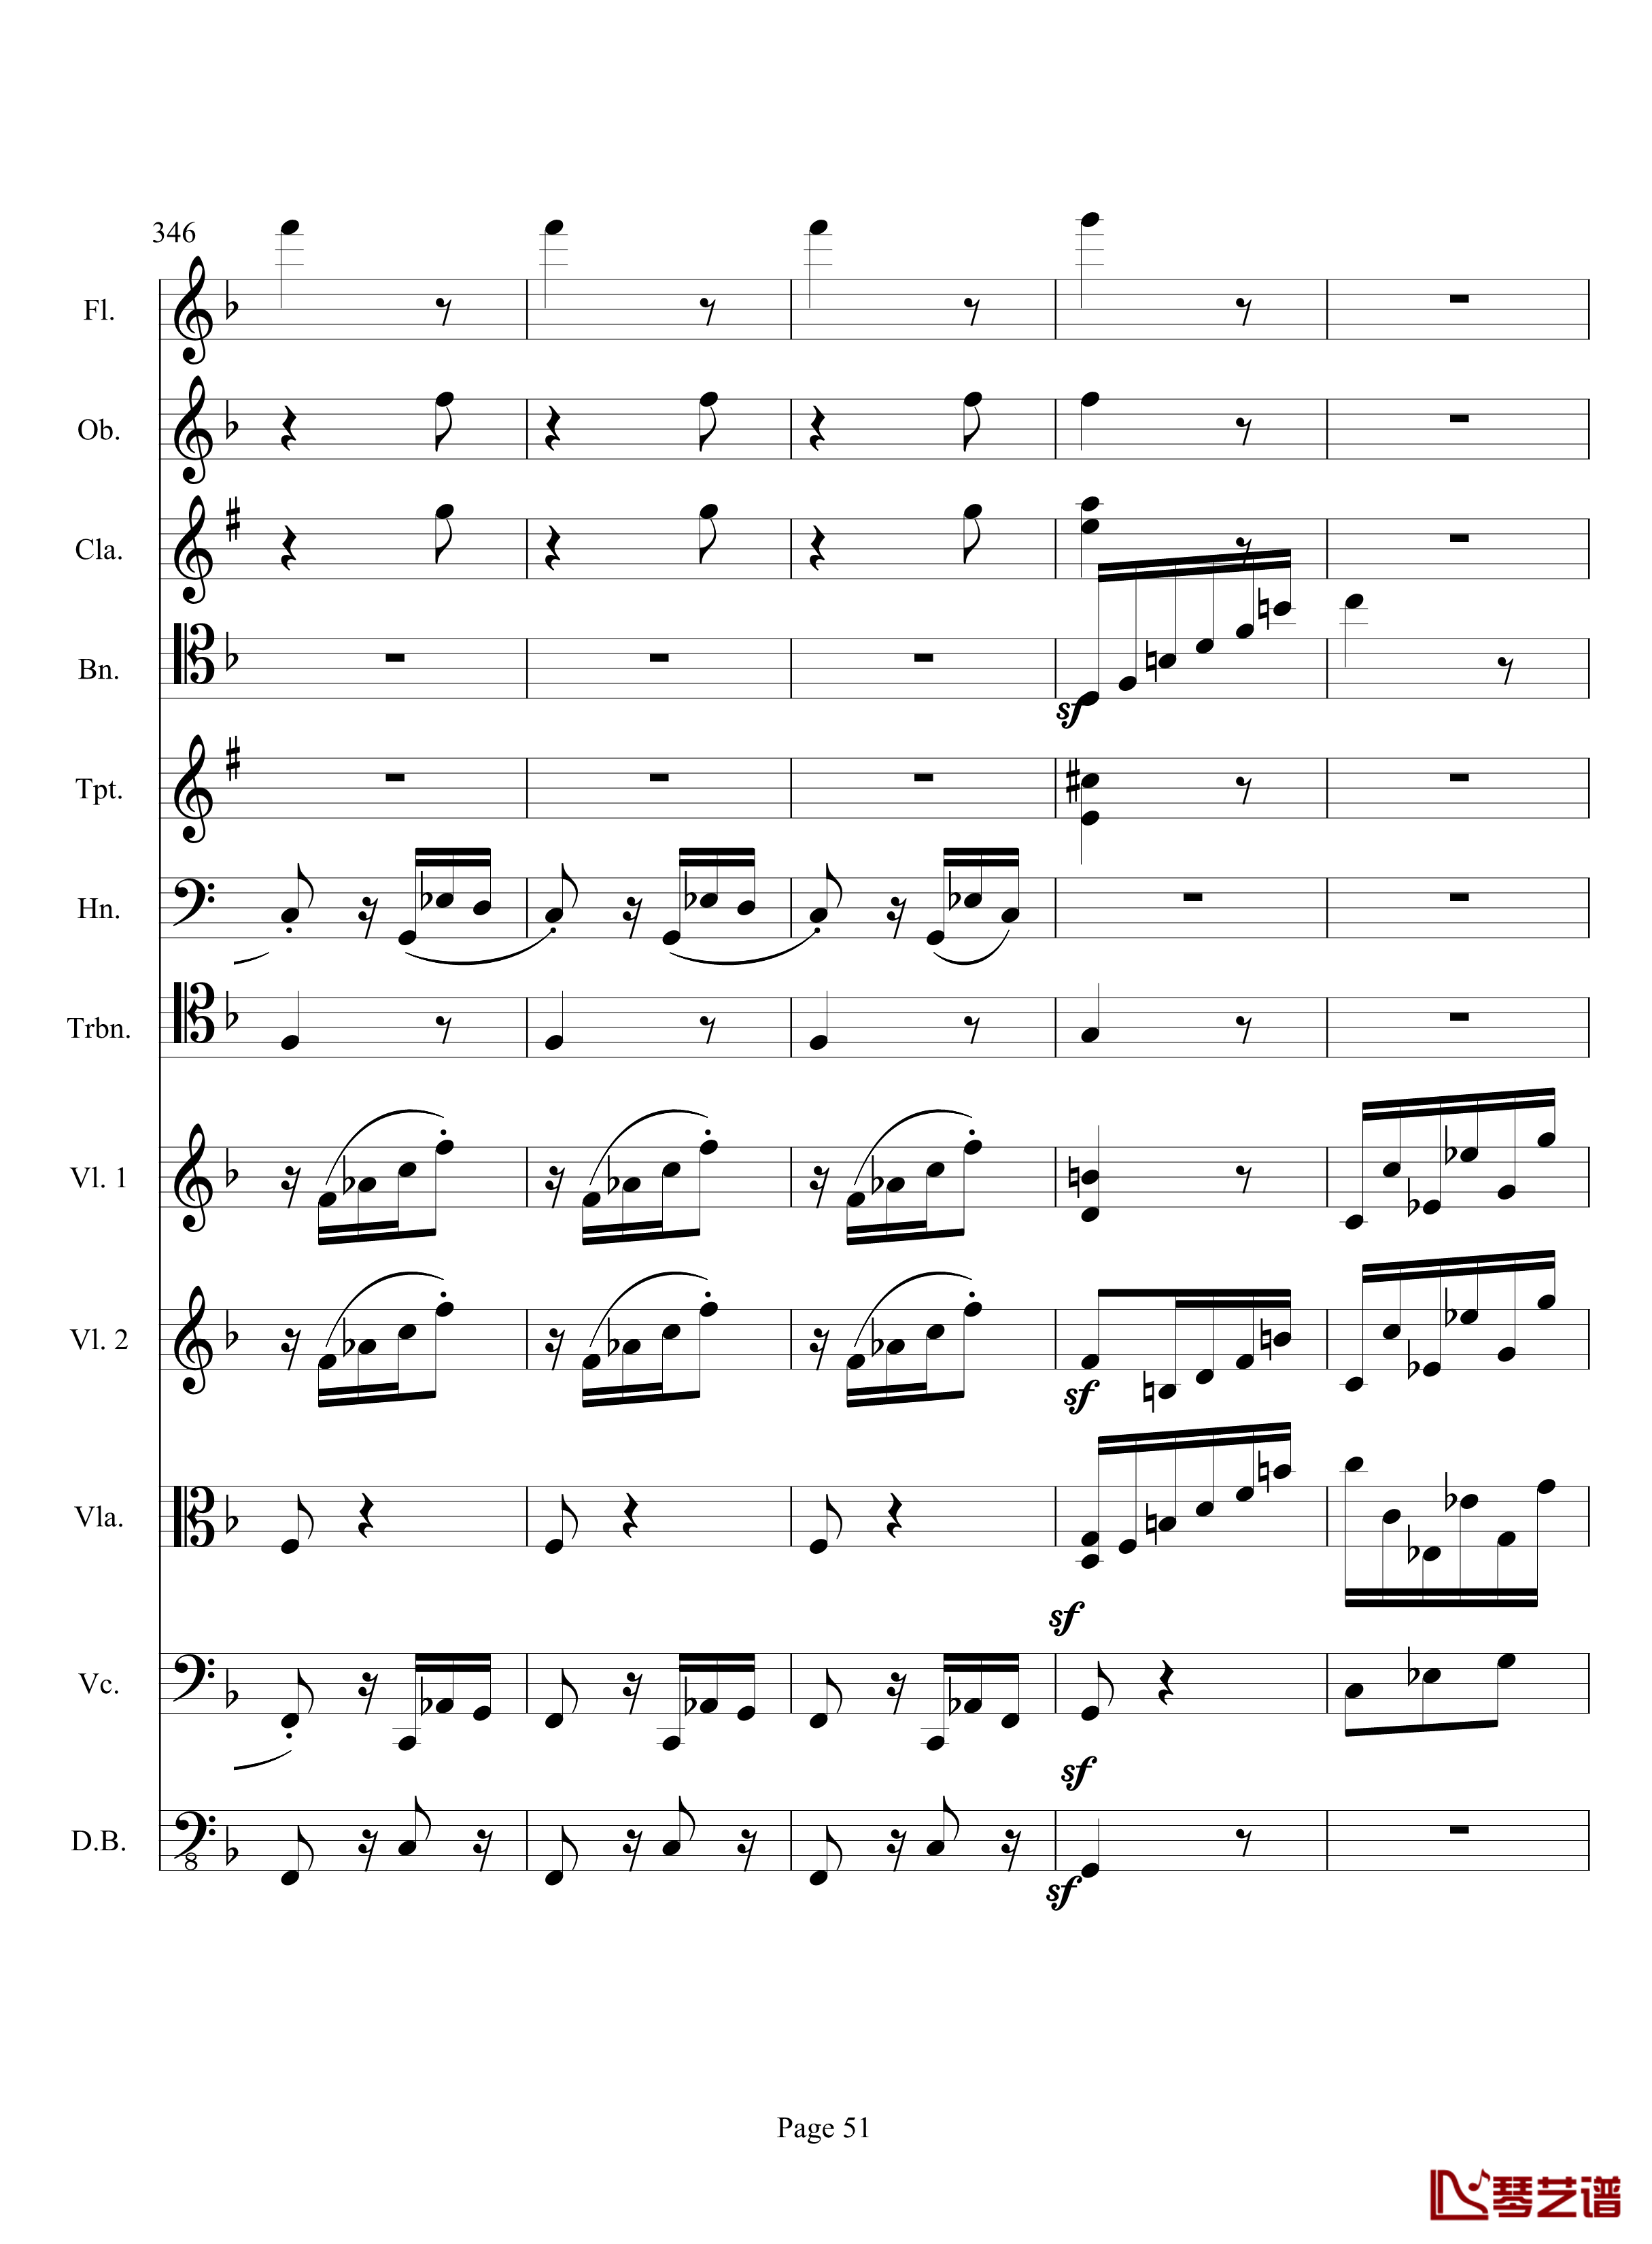 奏鸣曲之交响钢琴谱-第17首-Ⅲ-贝多芬-beethoven51